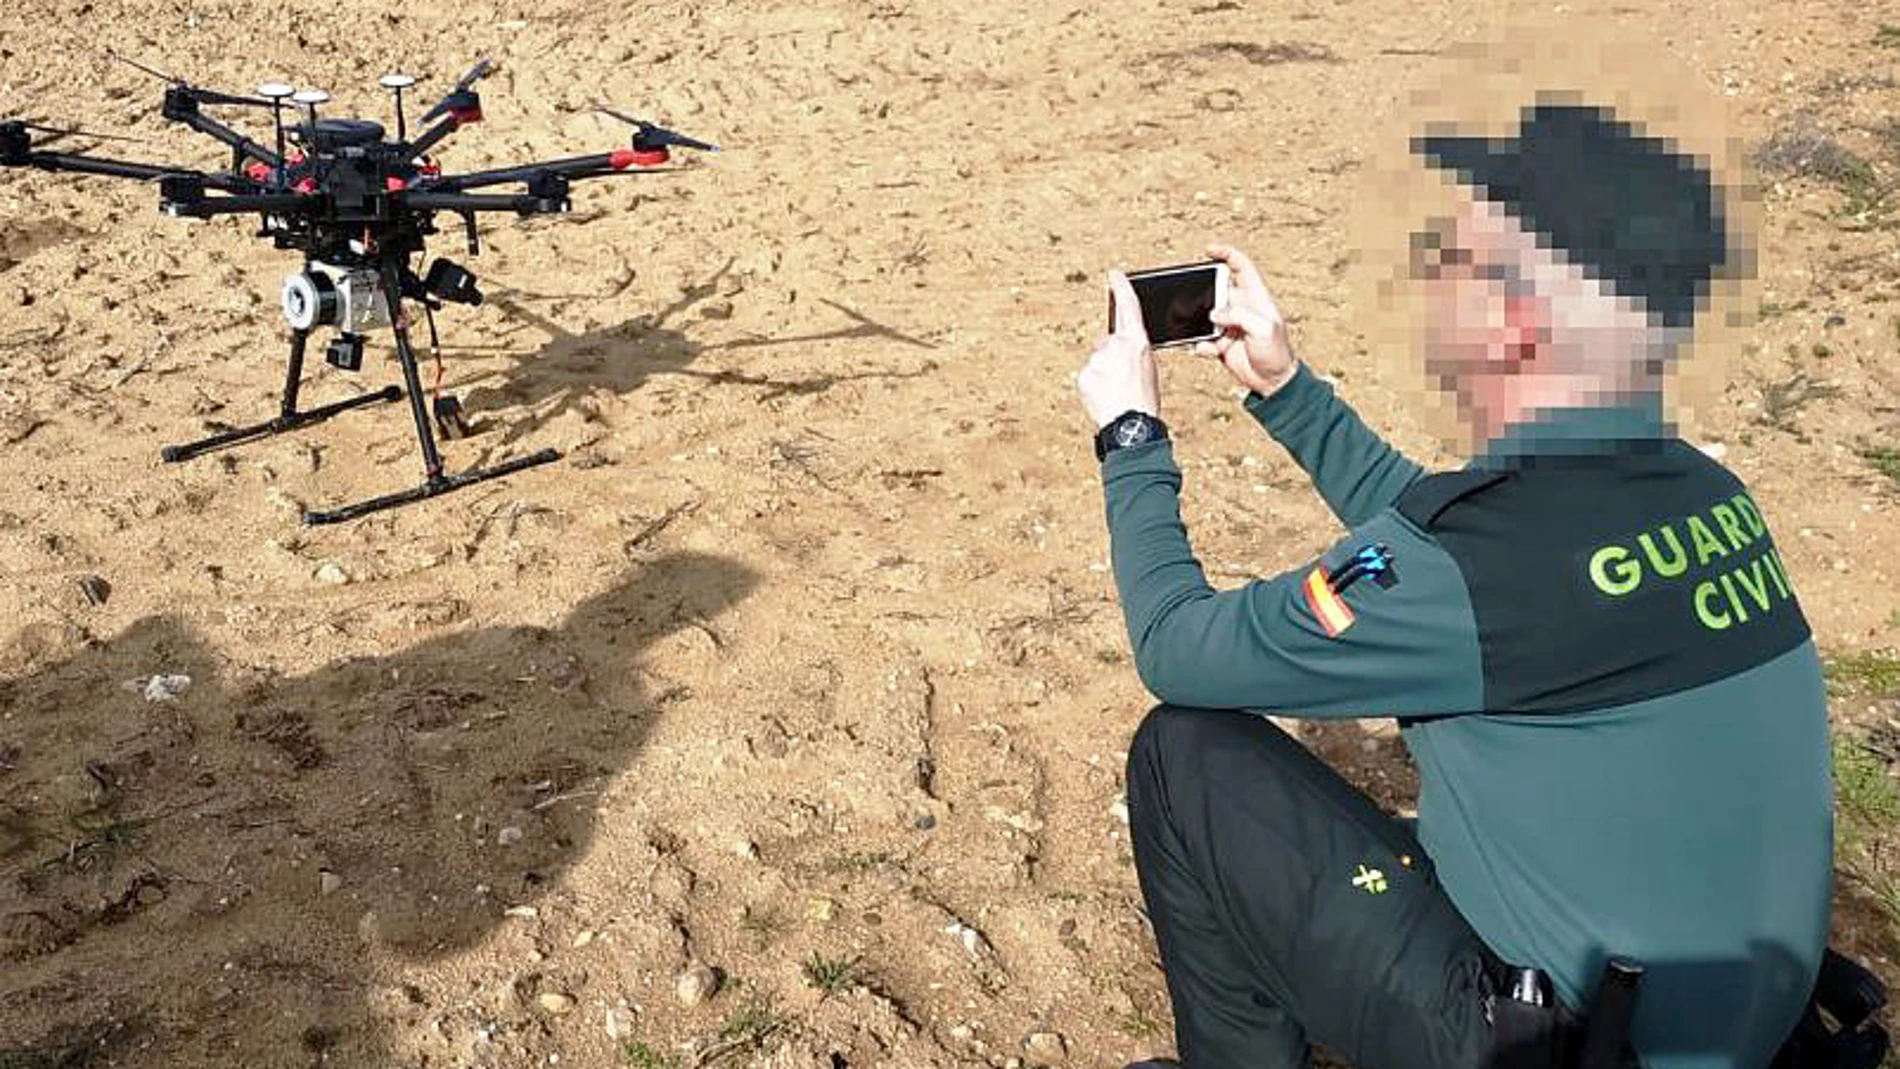 La Guardia Civil de Zamora identifica en la comarca de Aliste a una persona que utilizaba sin las pertinentes autorizaciones un dron en las inmediaciones de la carretera N-122 y que se había saltado el confinamiento para viajar desde Madrid